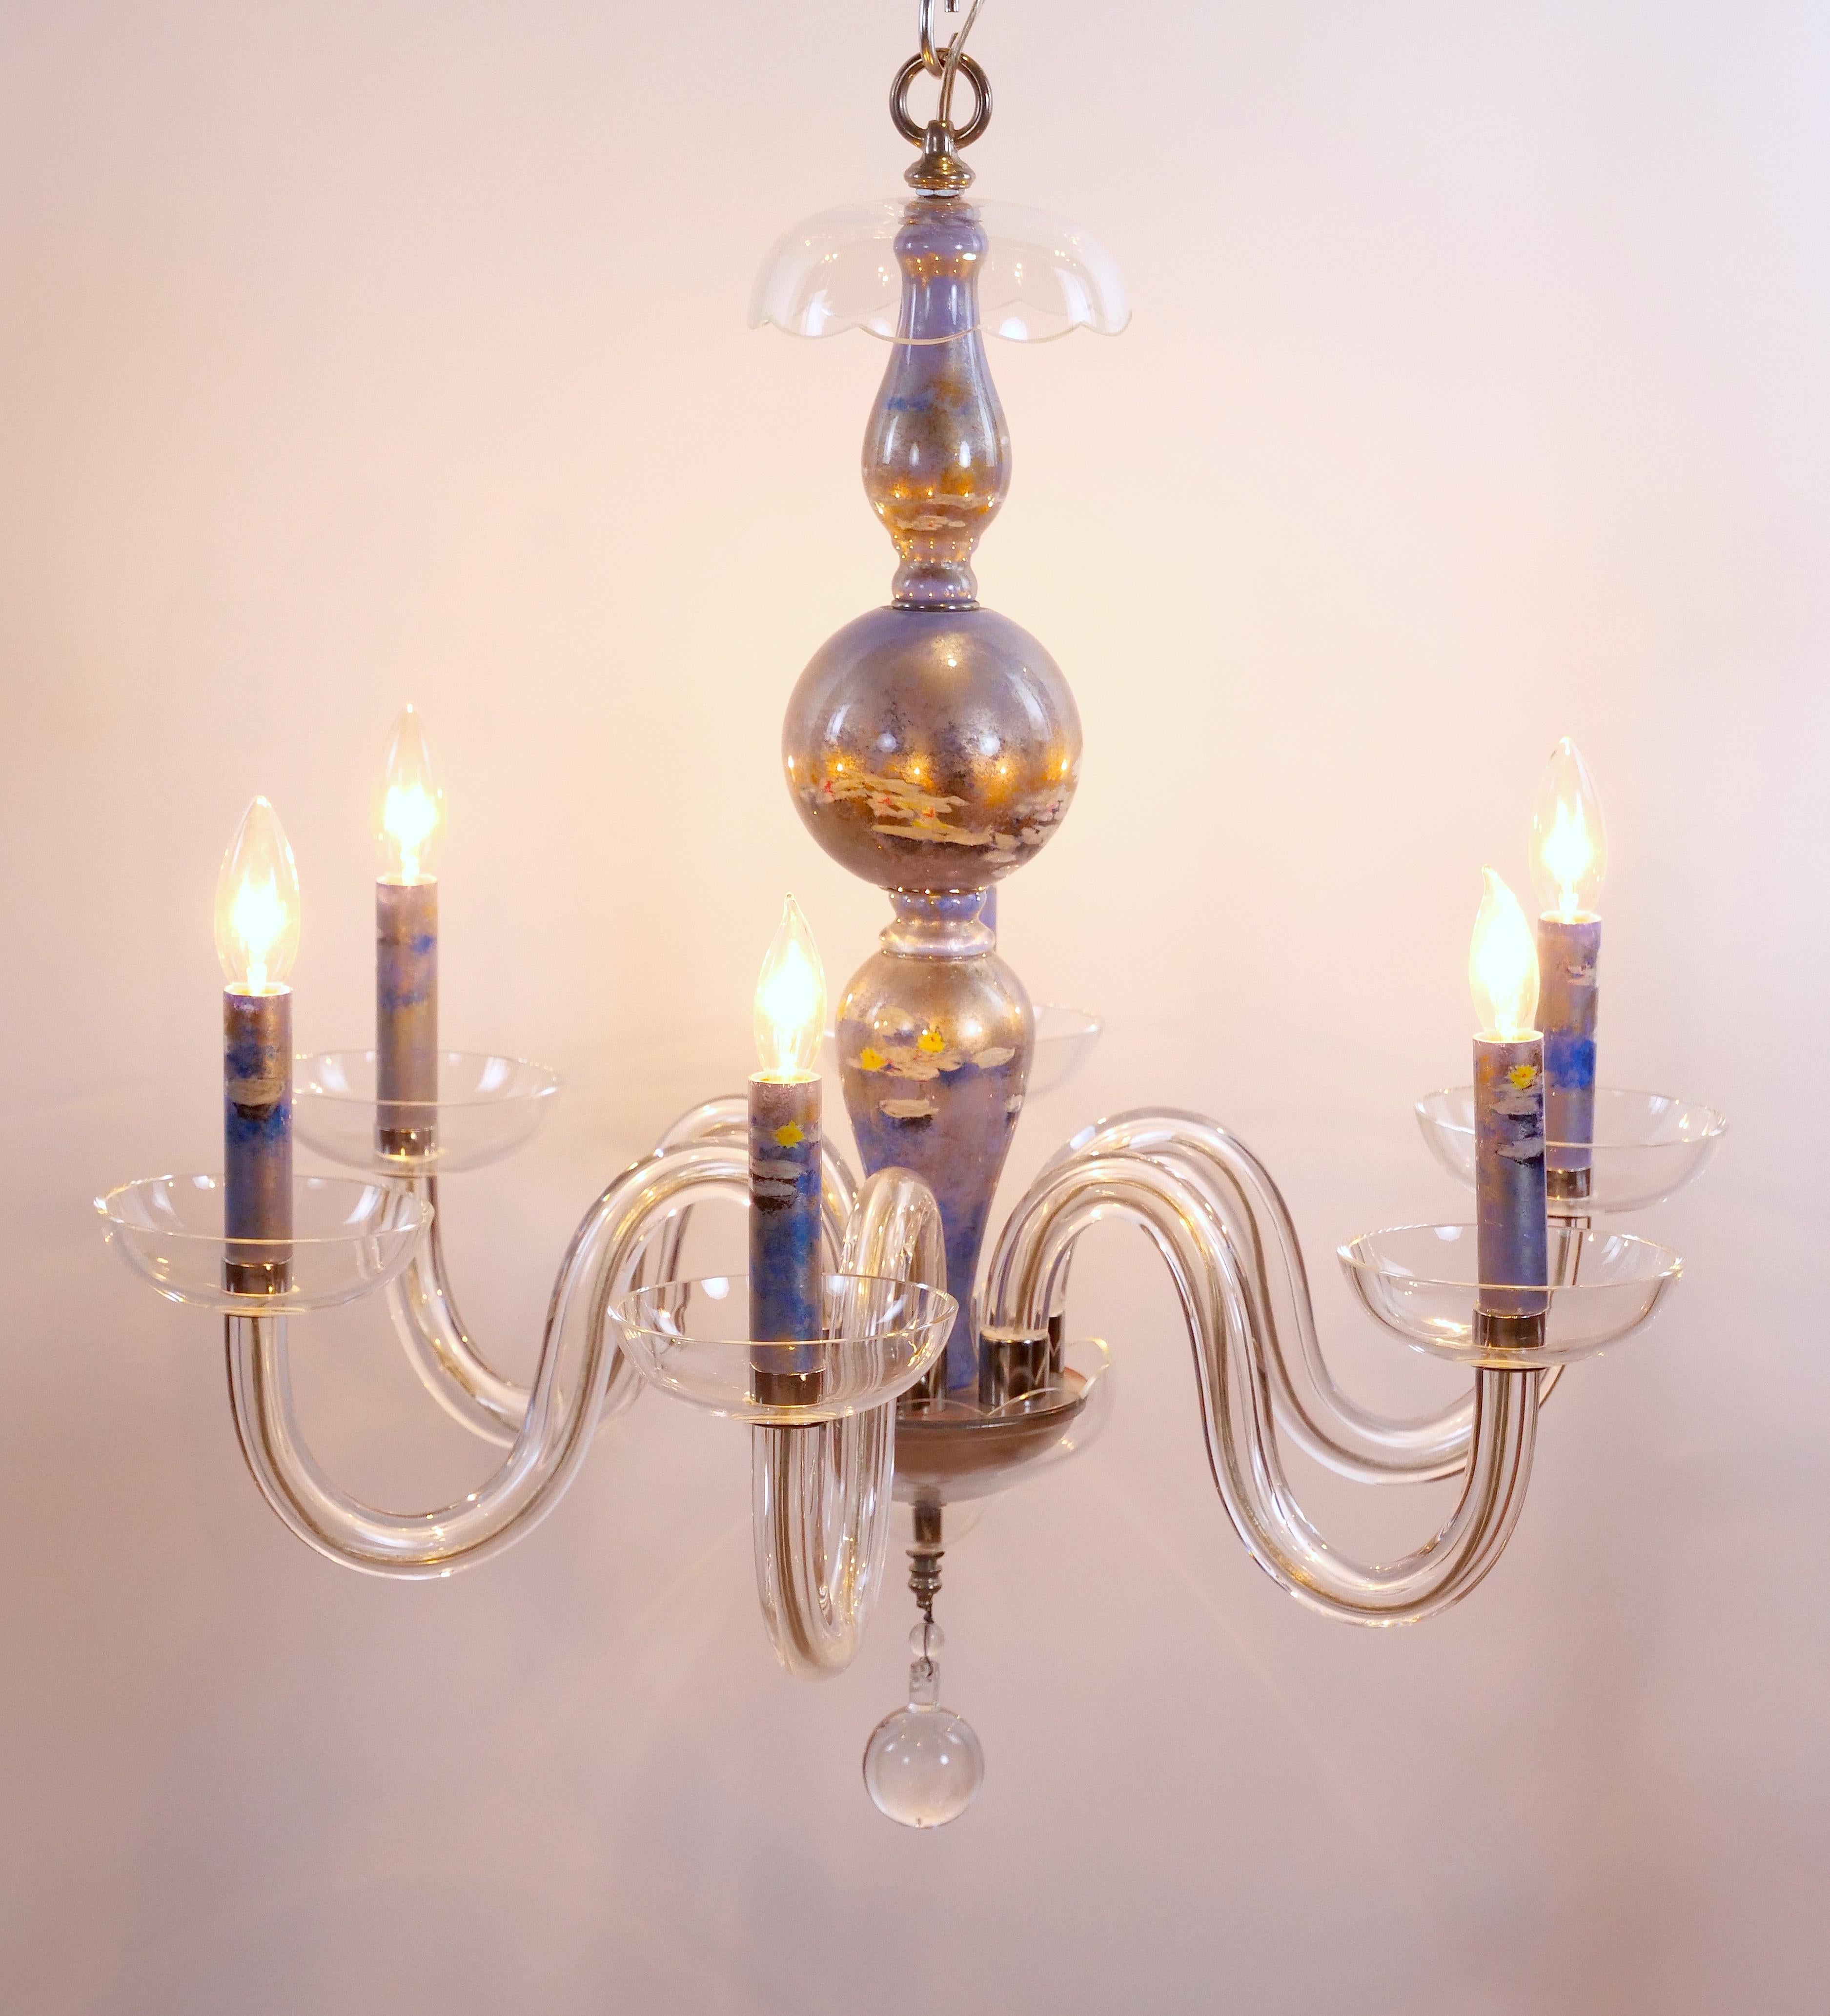 
Dieser exquisite venezianische Kronleuchter aus italienischem Glas, handgefertigt aus klarem, mundgeblasenem Glas und verziert mit zarten, versilberten Akzenten, wertet Ihren Raum auf. Die geschmackvoll gestalteten Kerzenhüllen zeigen handgemalte